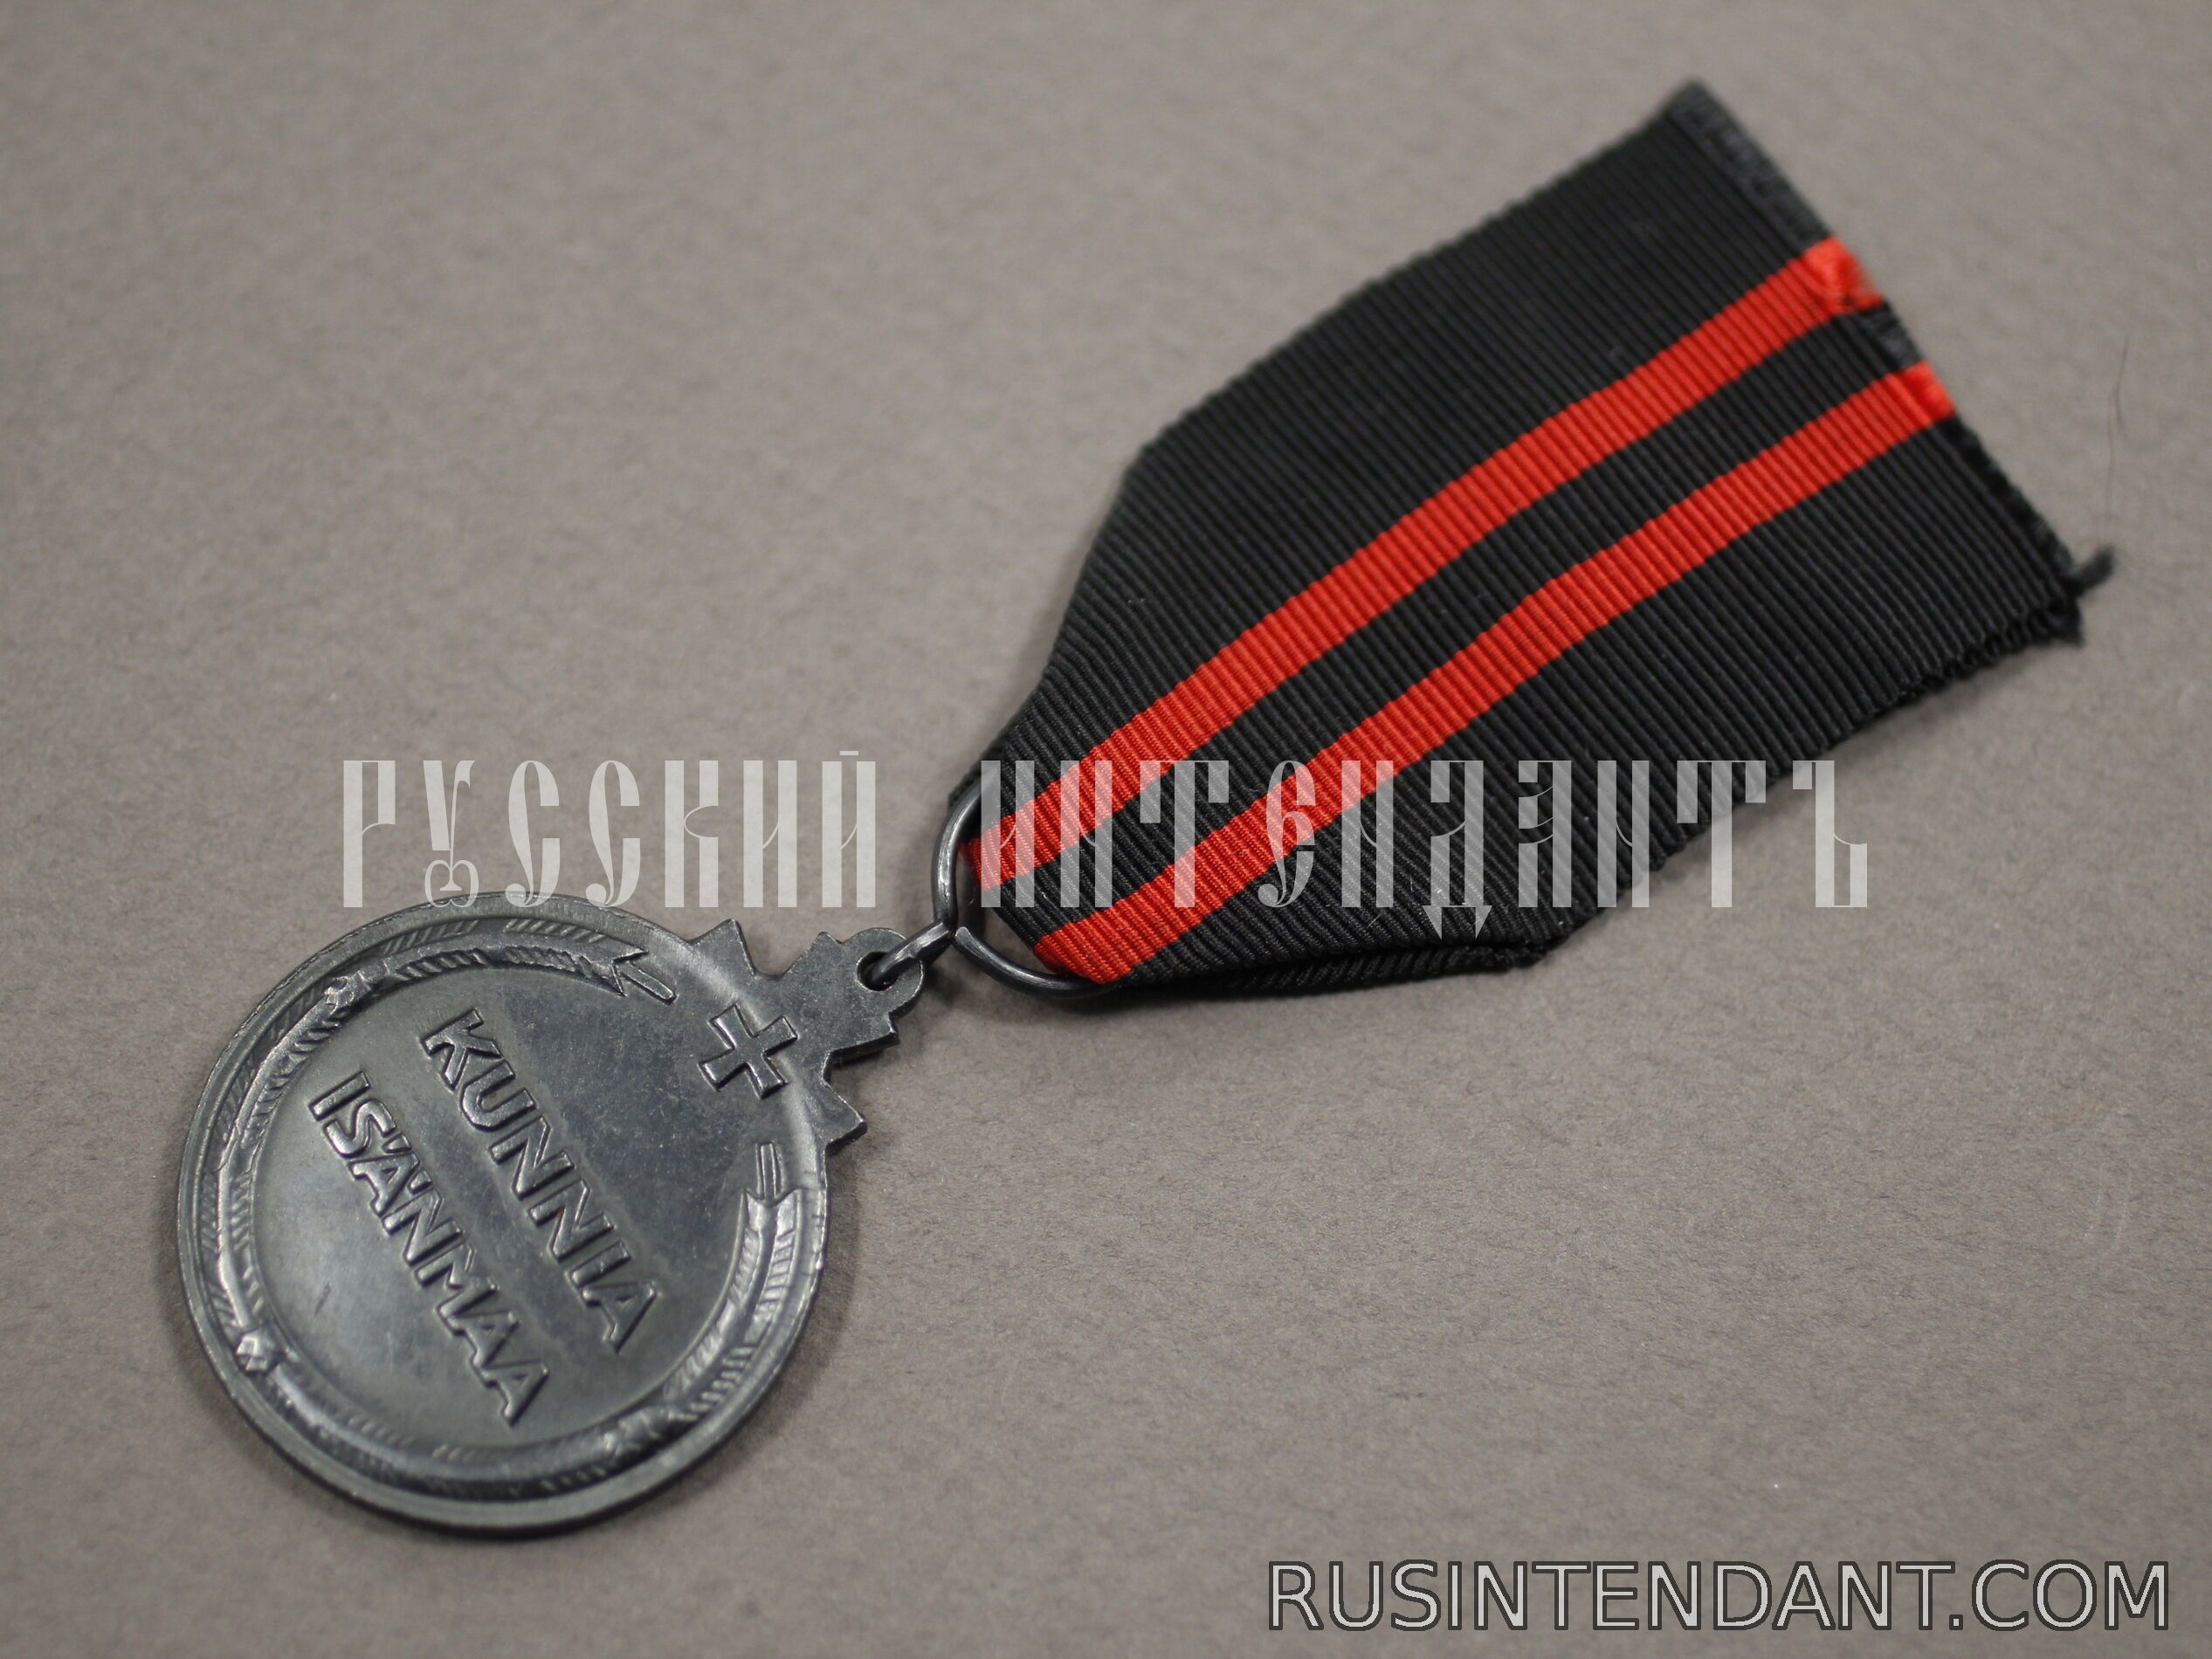 Фото 4: Медаль зимней войны 1939-1940 